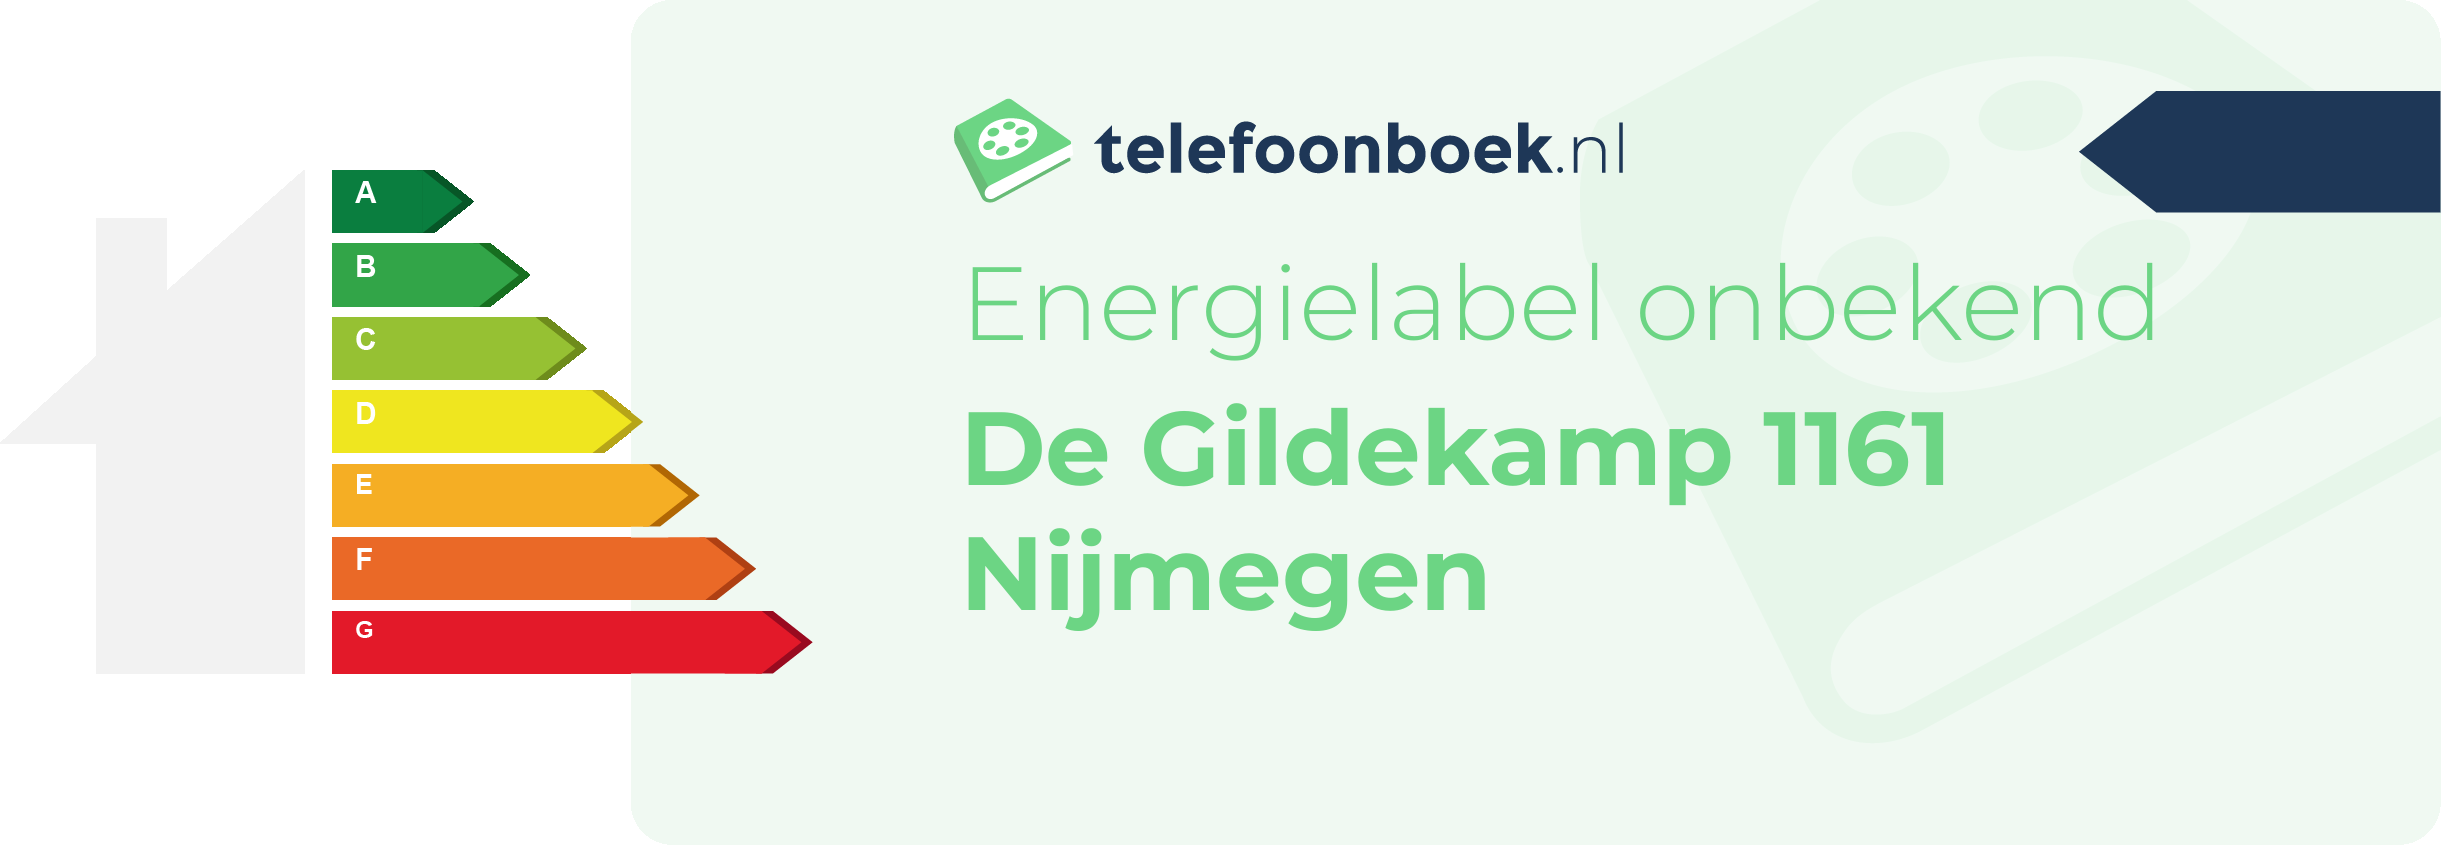 Energielabel De Gildekamp 1161 Nijmegen